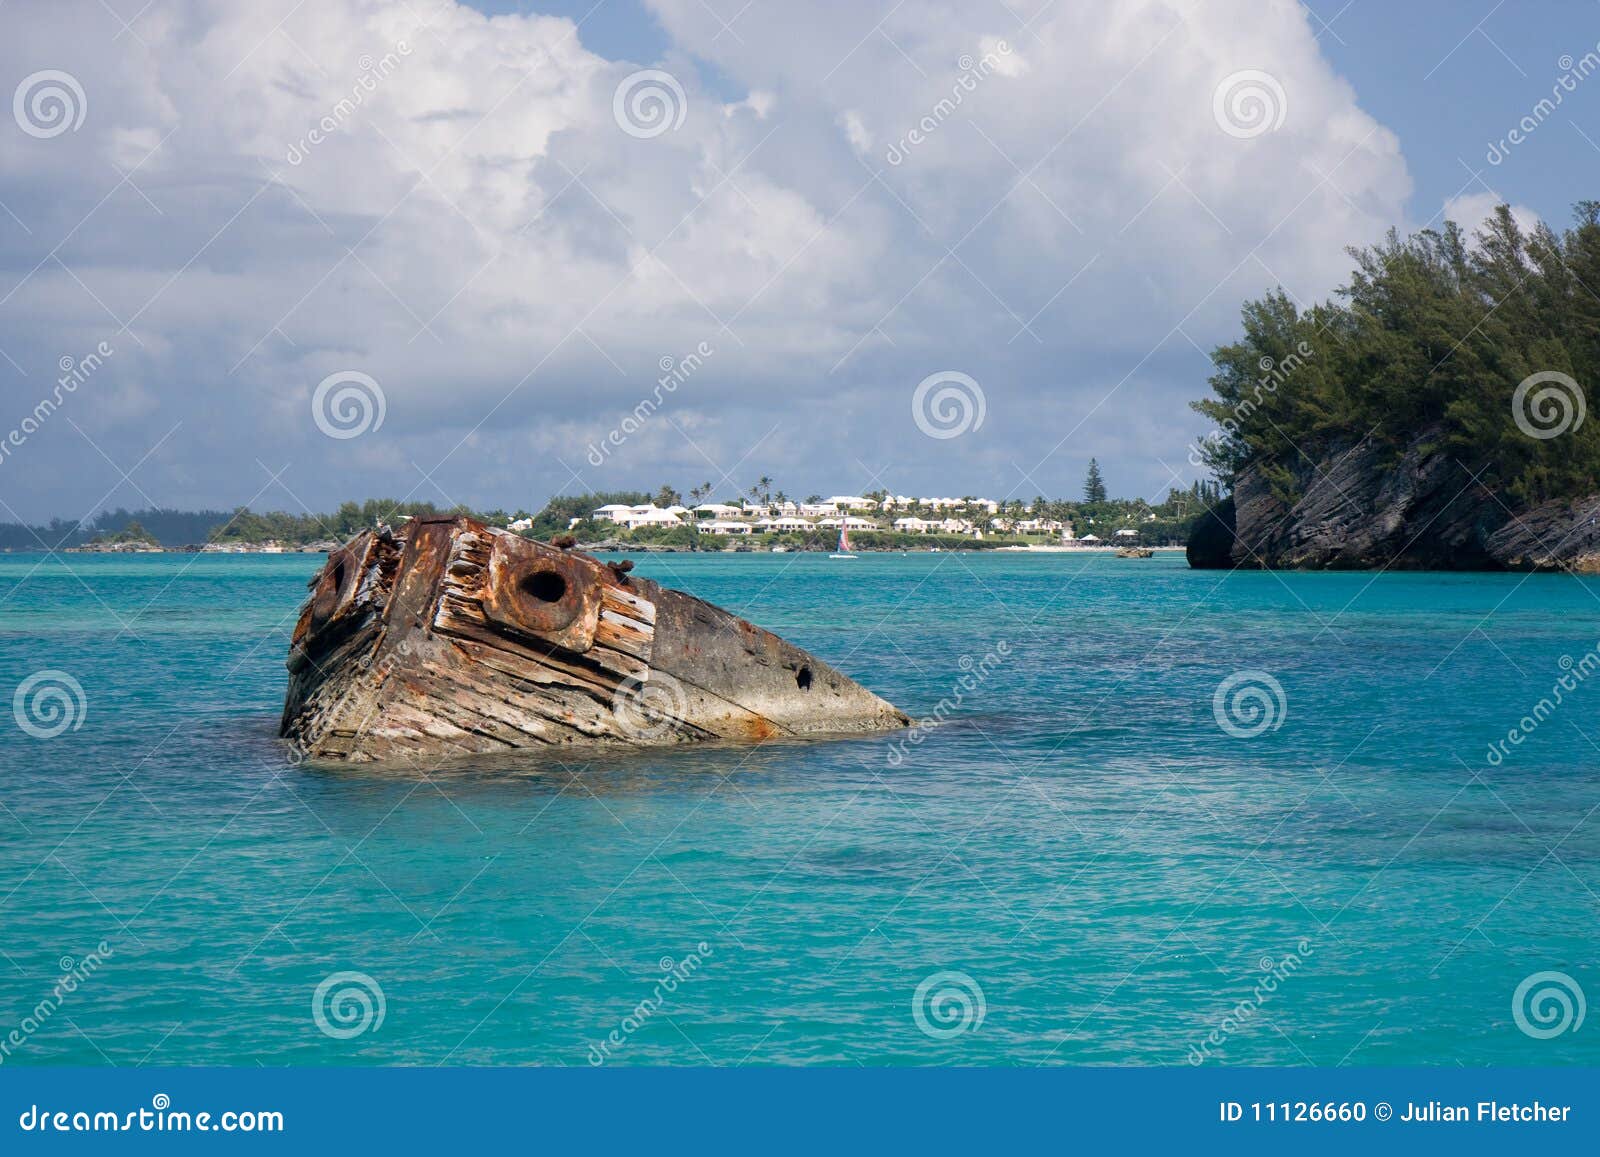 the vixen shipwreck, bermuda